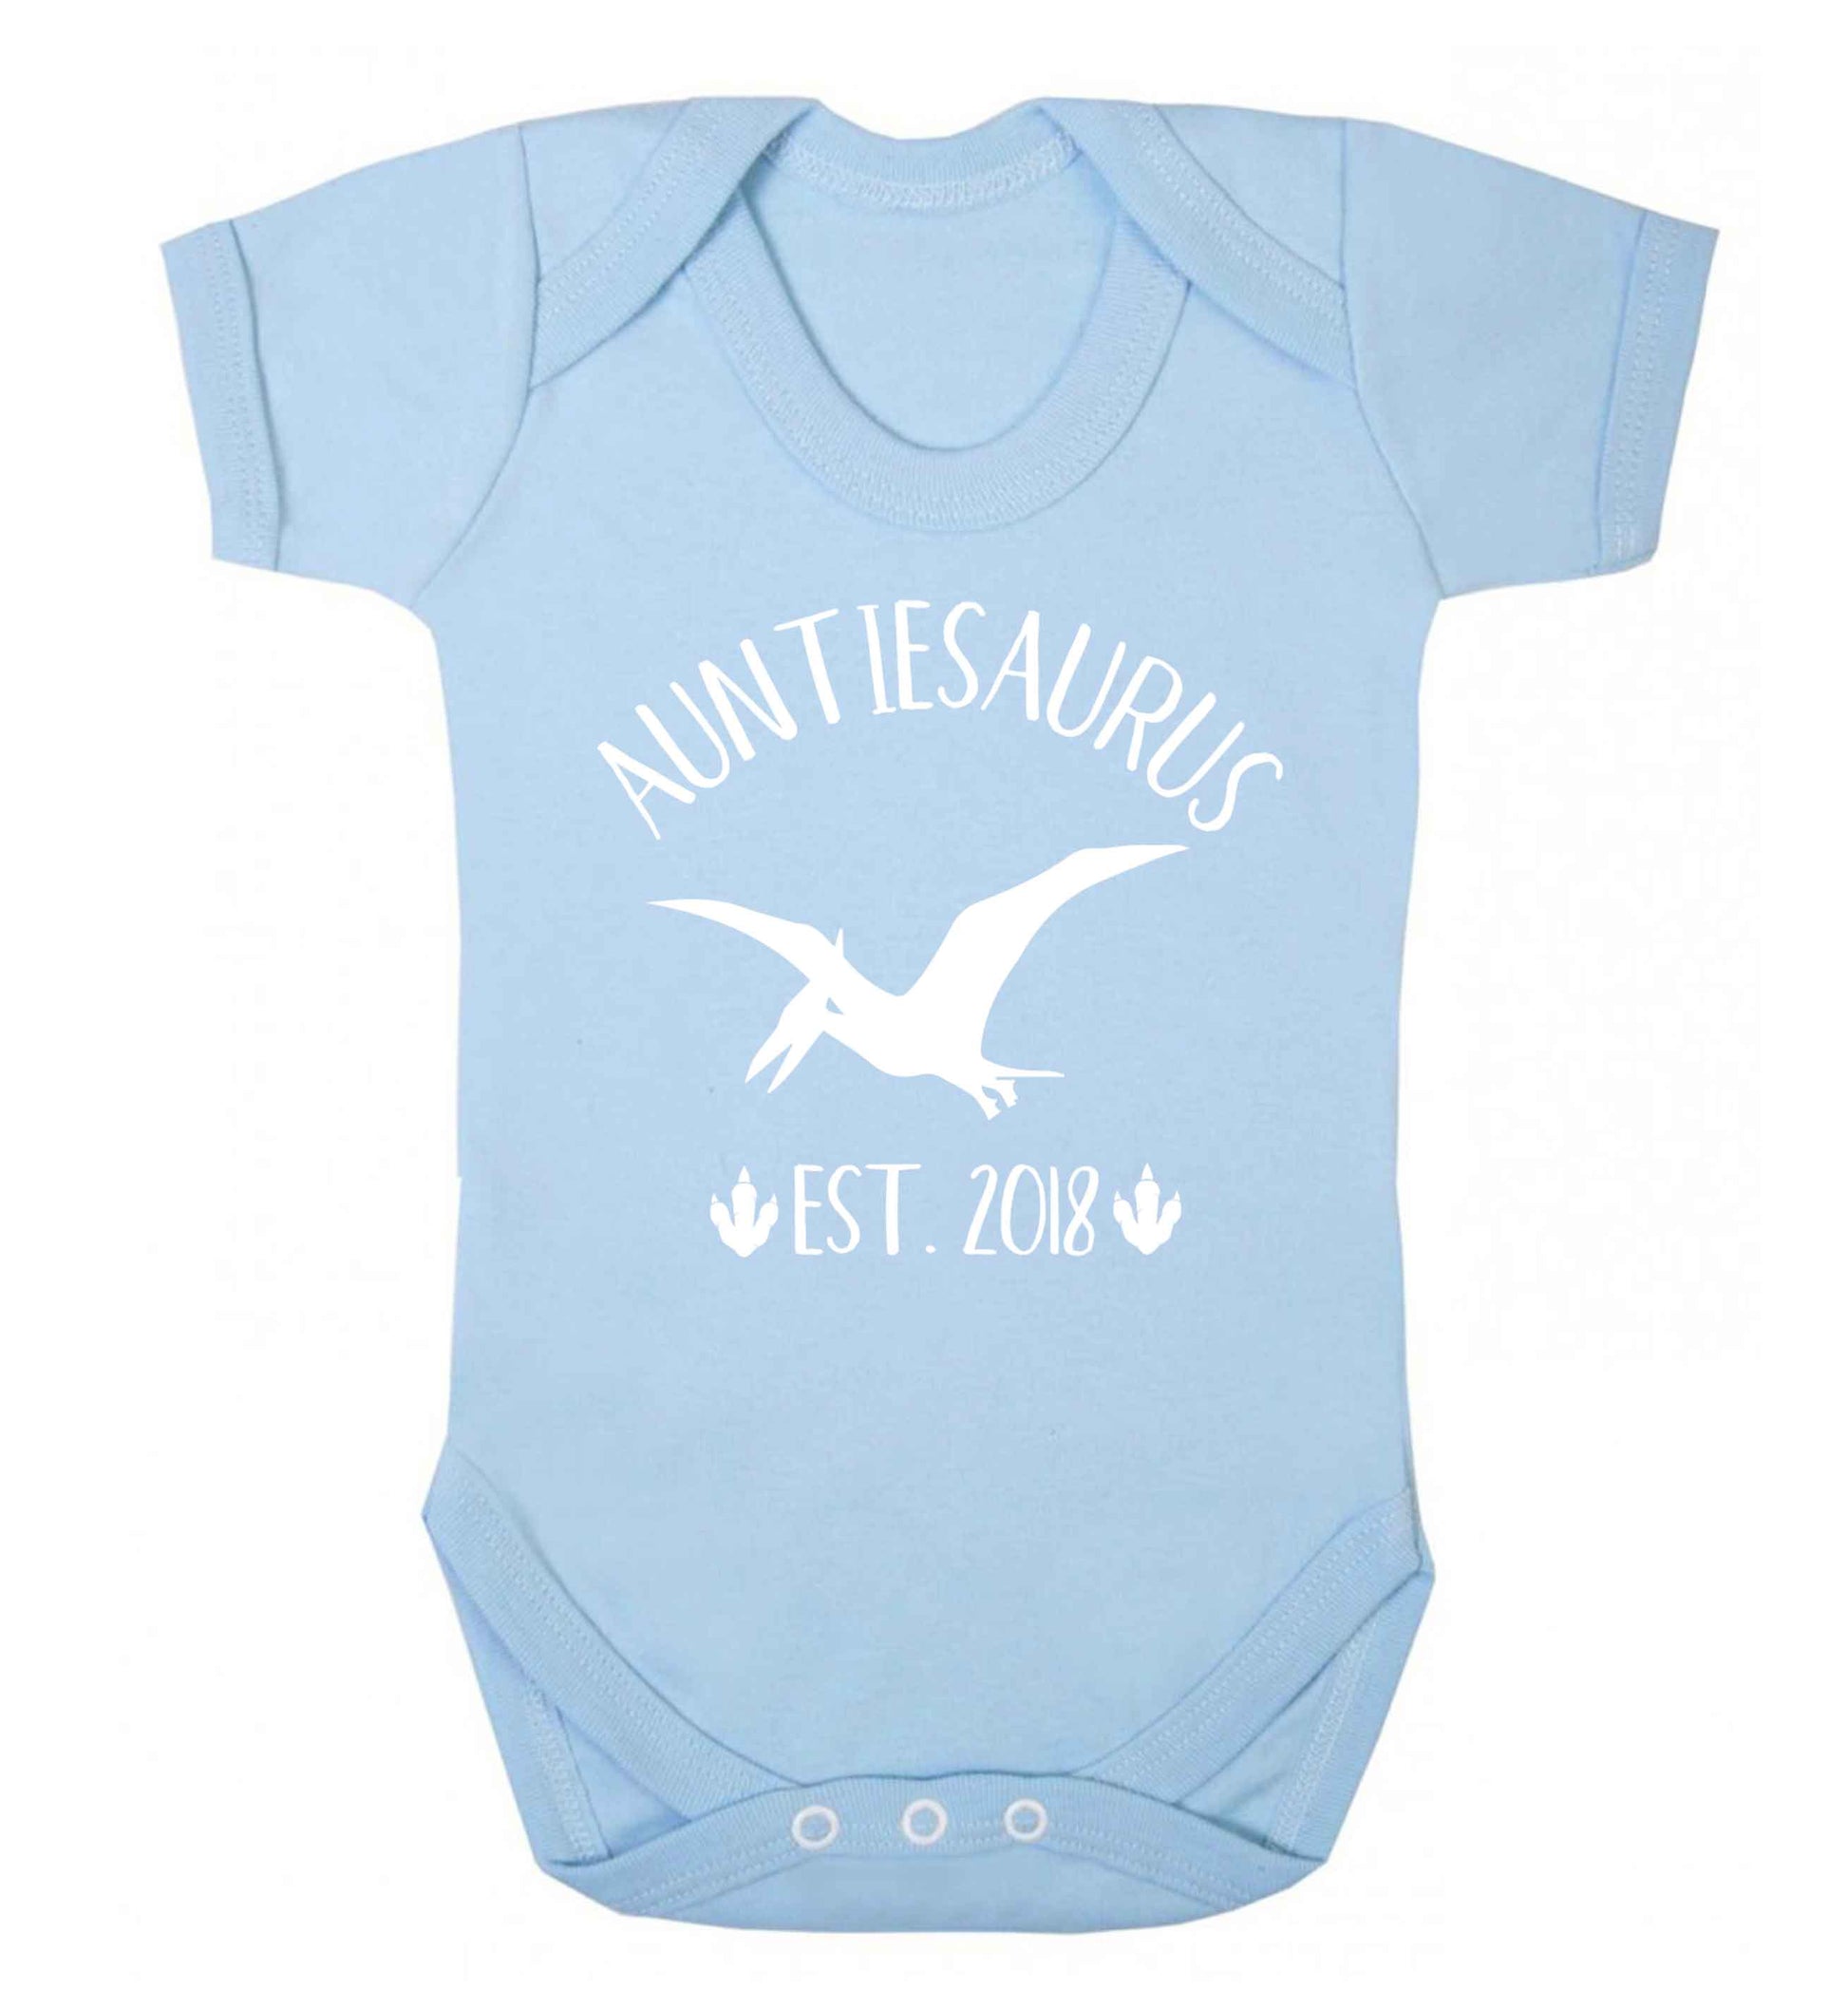 Personalised auntiesaurus since (custom date) Baby Vest pale blue 18-24 months